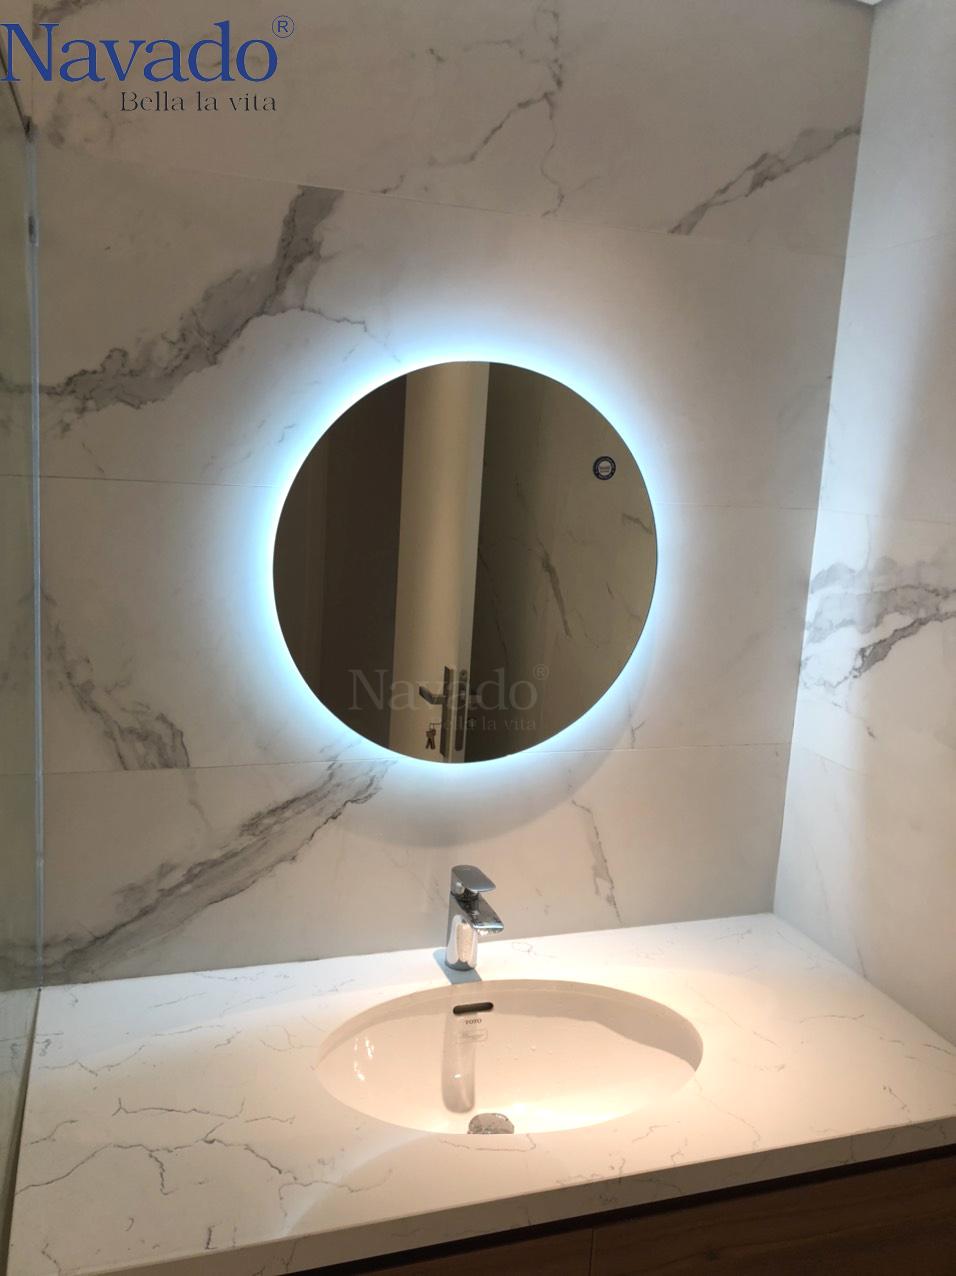 Gương phòng tắm tròn hắt sáng: Gương phòng tắm tròn hắt sáng mang đến cho không gian phòng tắm của bạn một vẻ đẹp lung linh và tạo sự độc đáo cho căn phòng. Thiết kế độc đáo và chất lượng cao cả về hình dạng và chất liệu giúp cho bạn tận hưởng những khoảnh khắc thư giãn tuyệt vời.